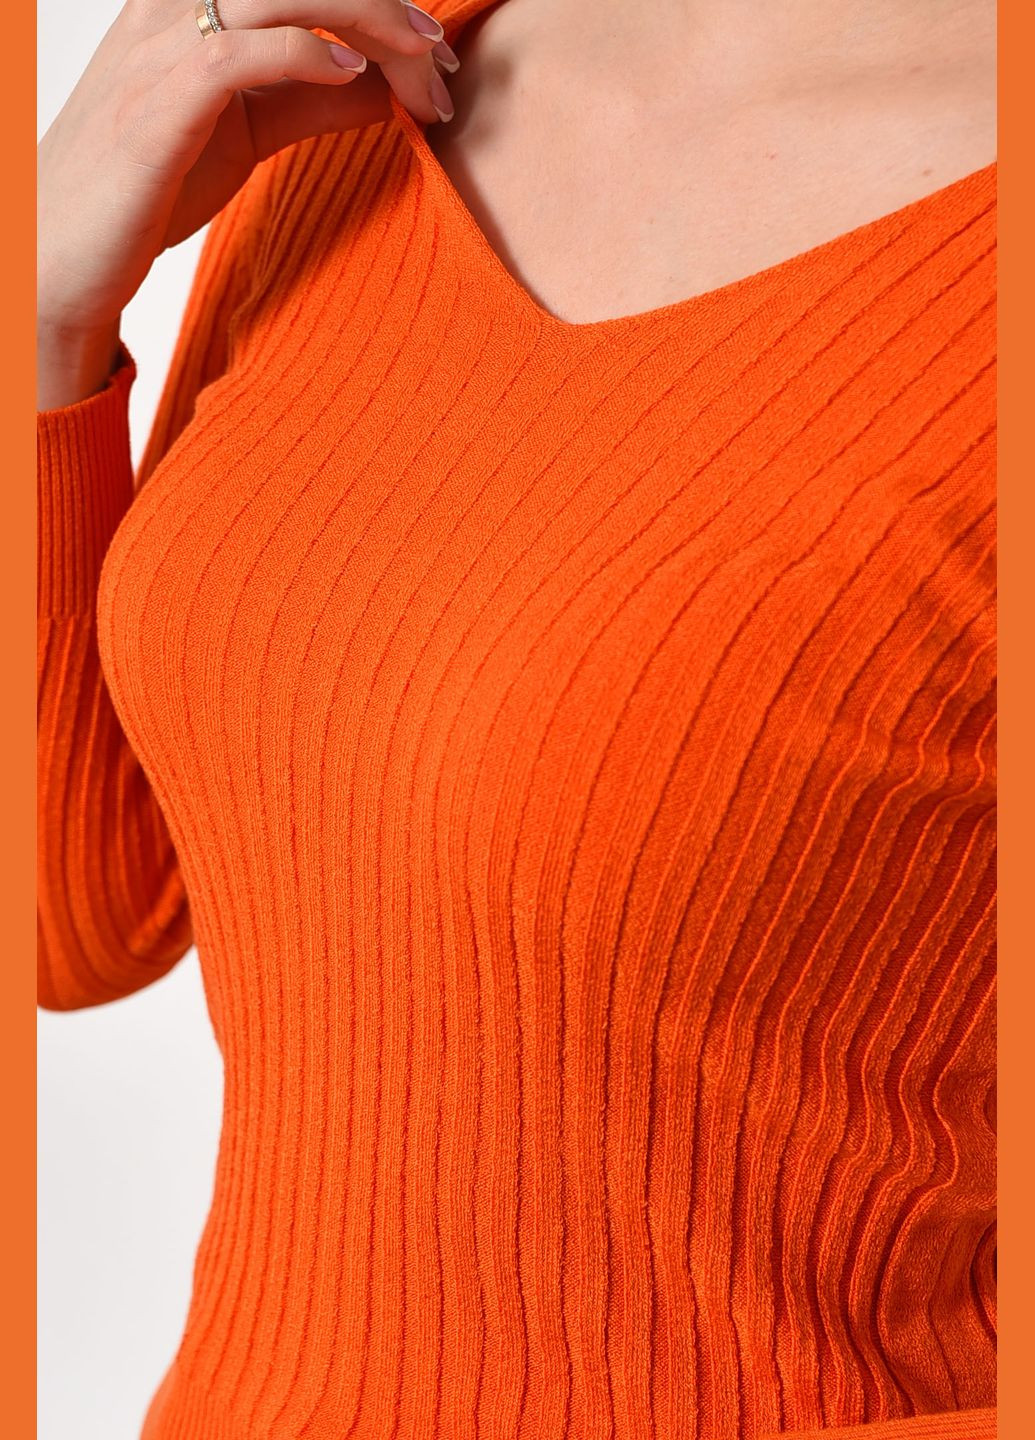 Помаранчевий демісезонний кофта жіноча помаранчевого кольору пуловер Let's Shop